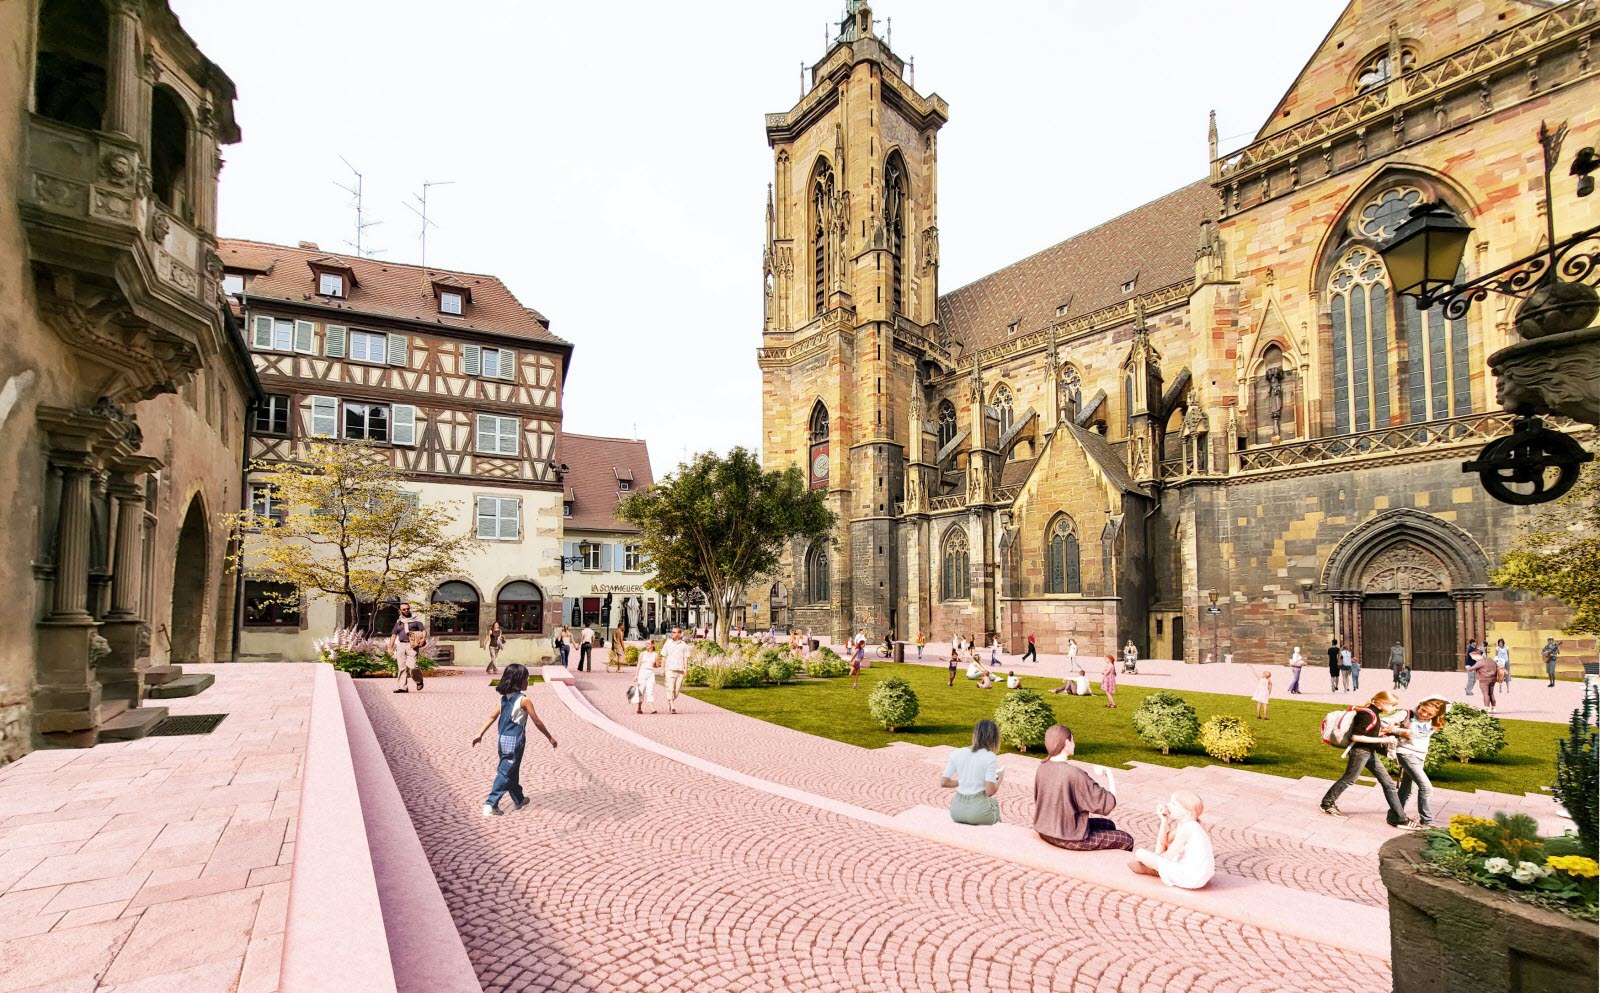 Projet de réaménagement de place de la Cathédrale par la Ville de Colmar (c)Ville de Colmar